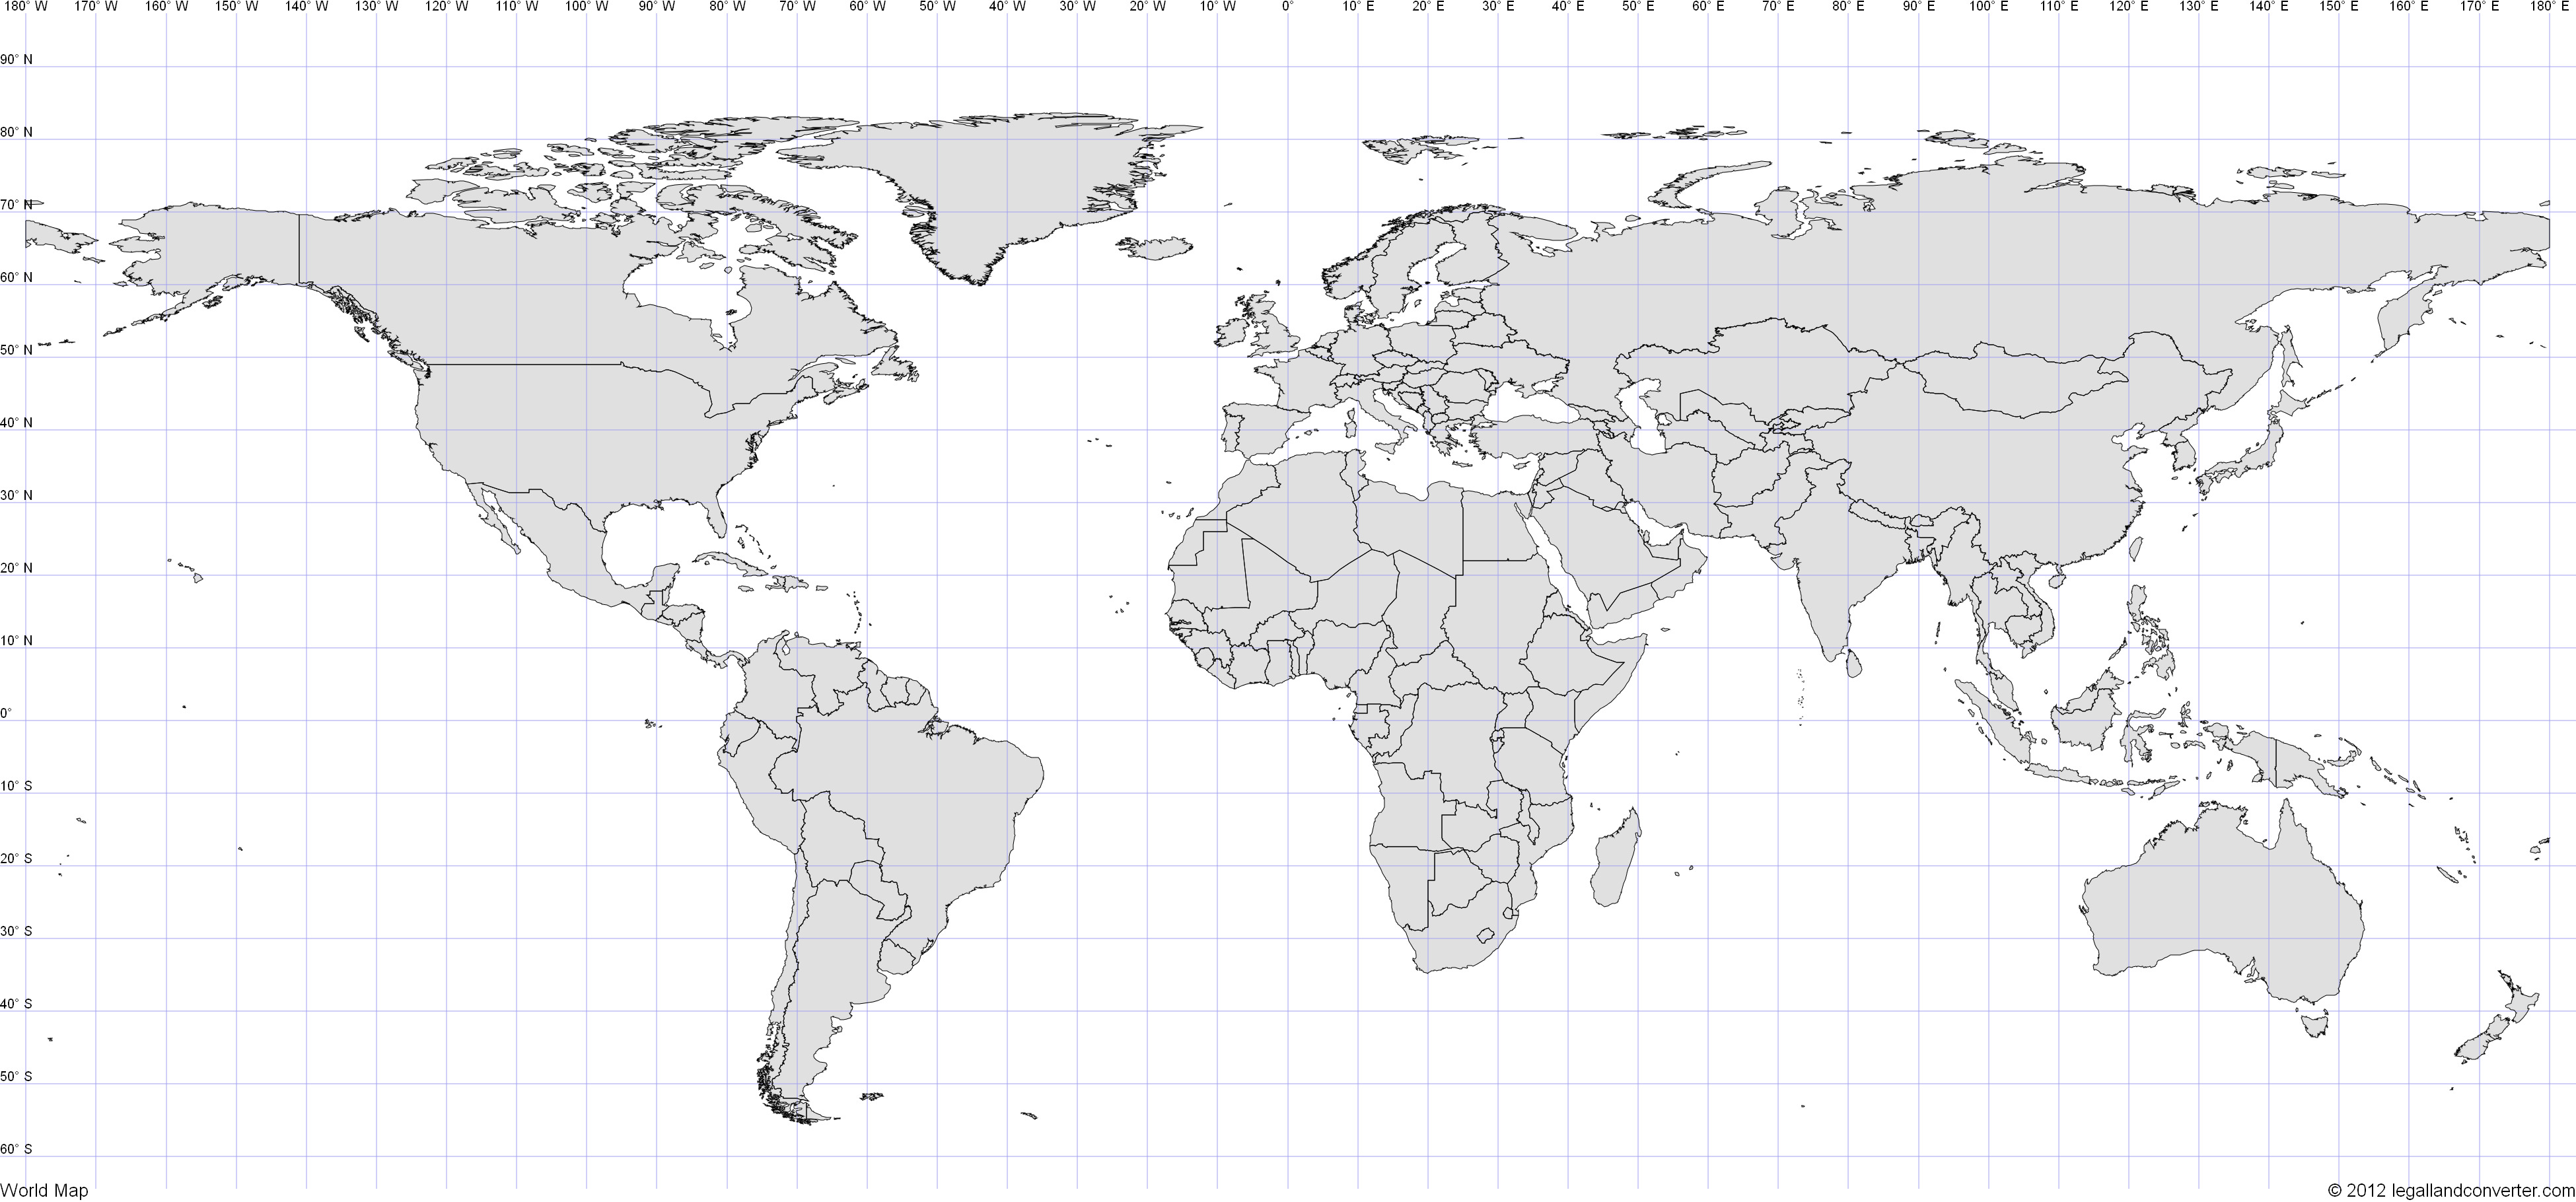 world-jpg-3900-1820-world-map-latitude-latitude-and-longitude